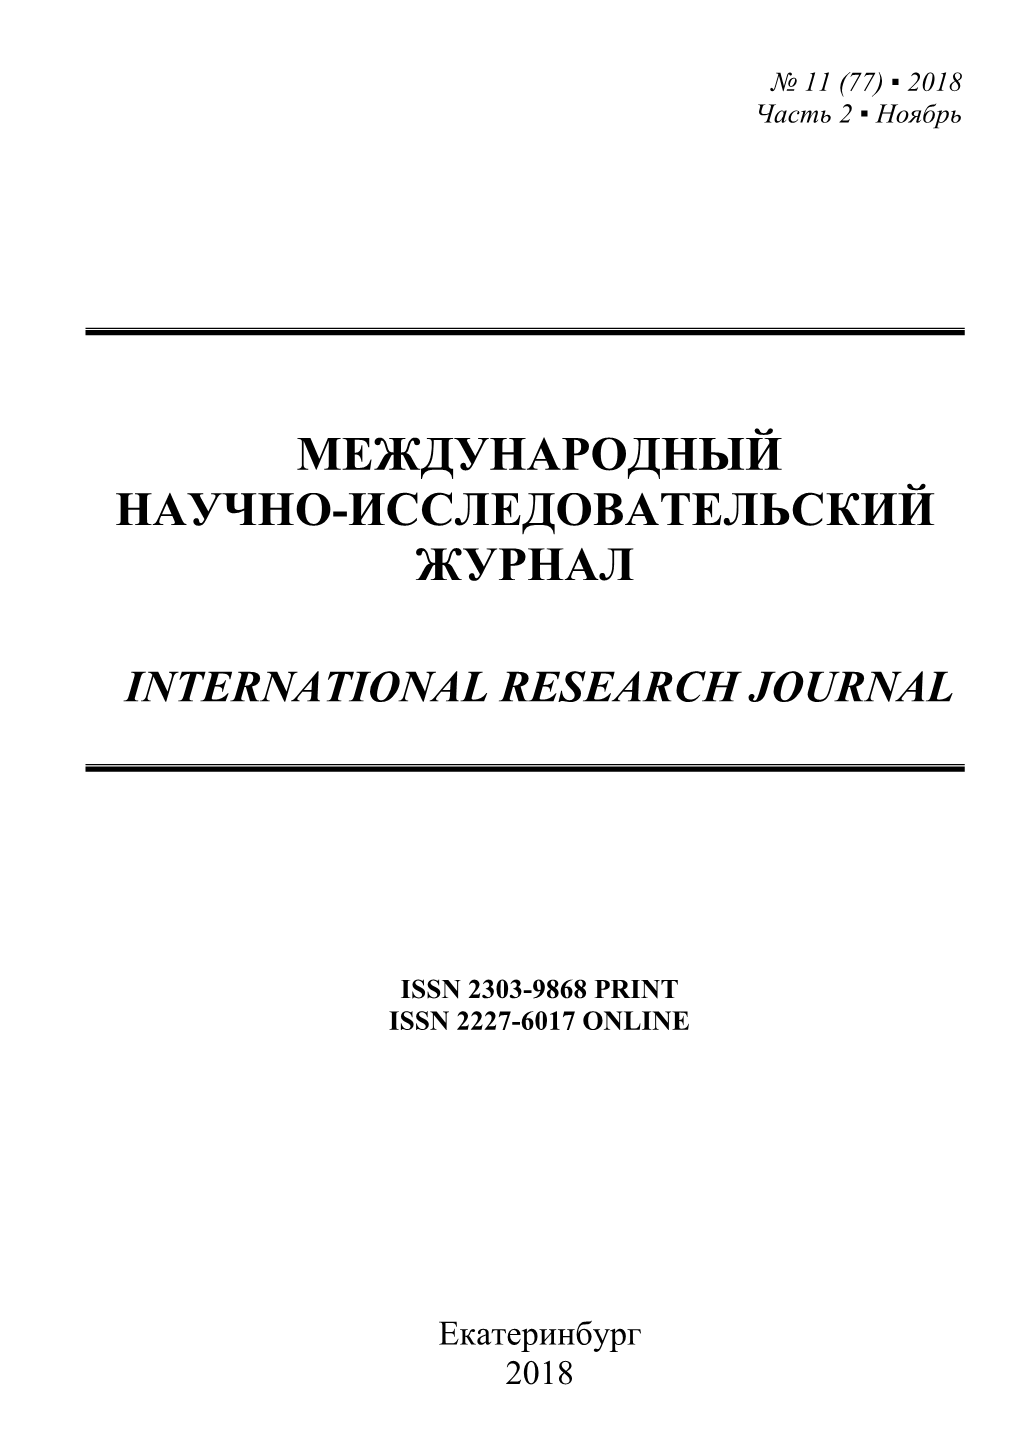 International Research Journal